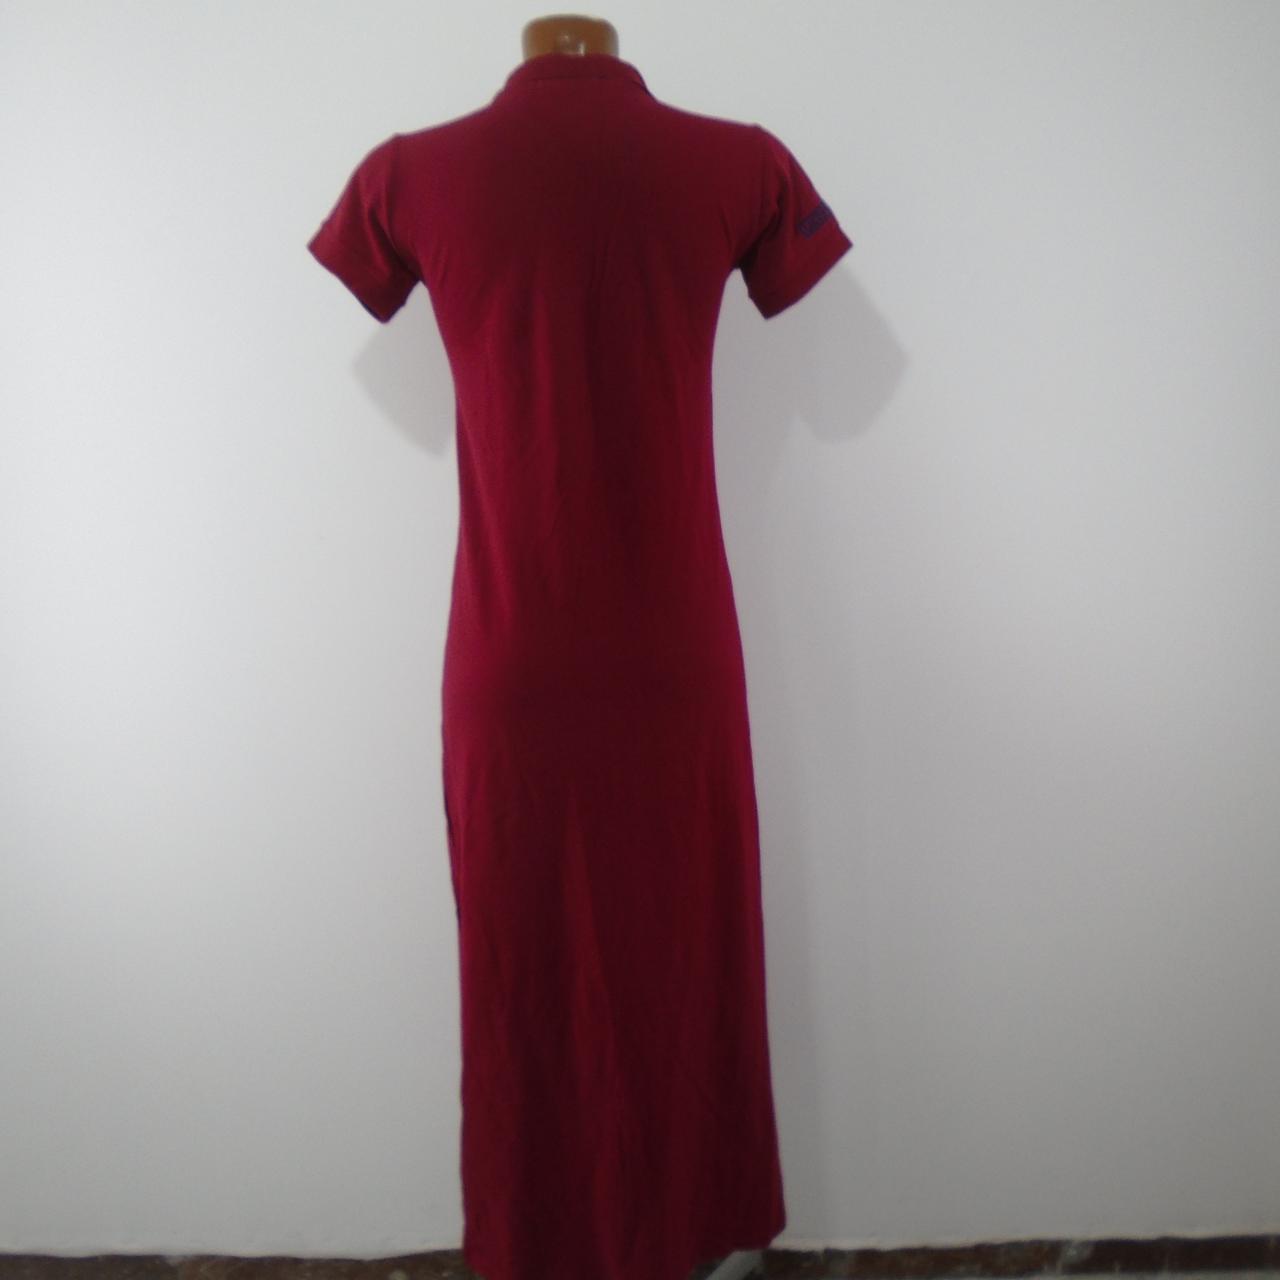 Women's Dress Sin Marca. Bordeaux. XL. Used. Good